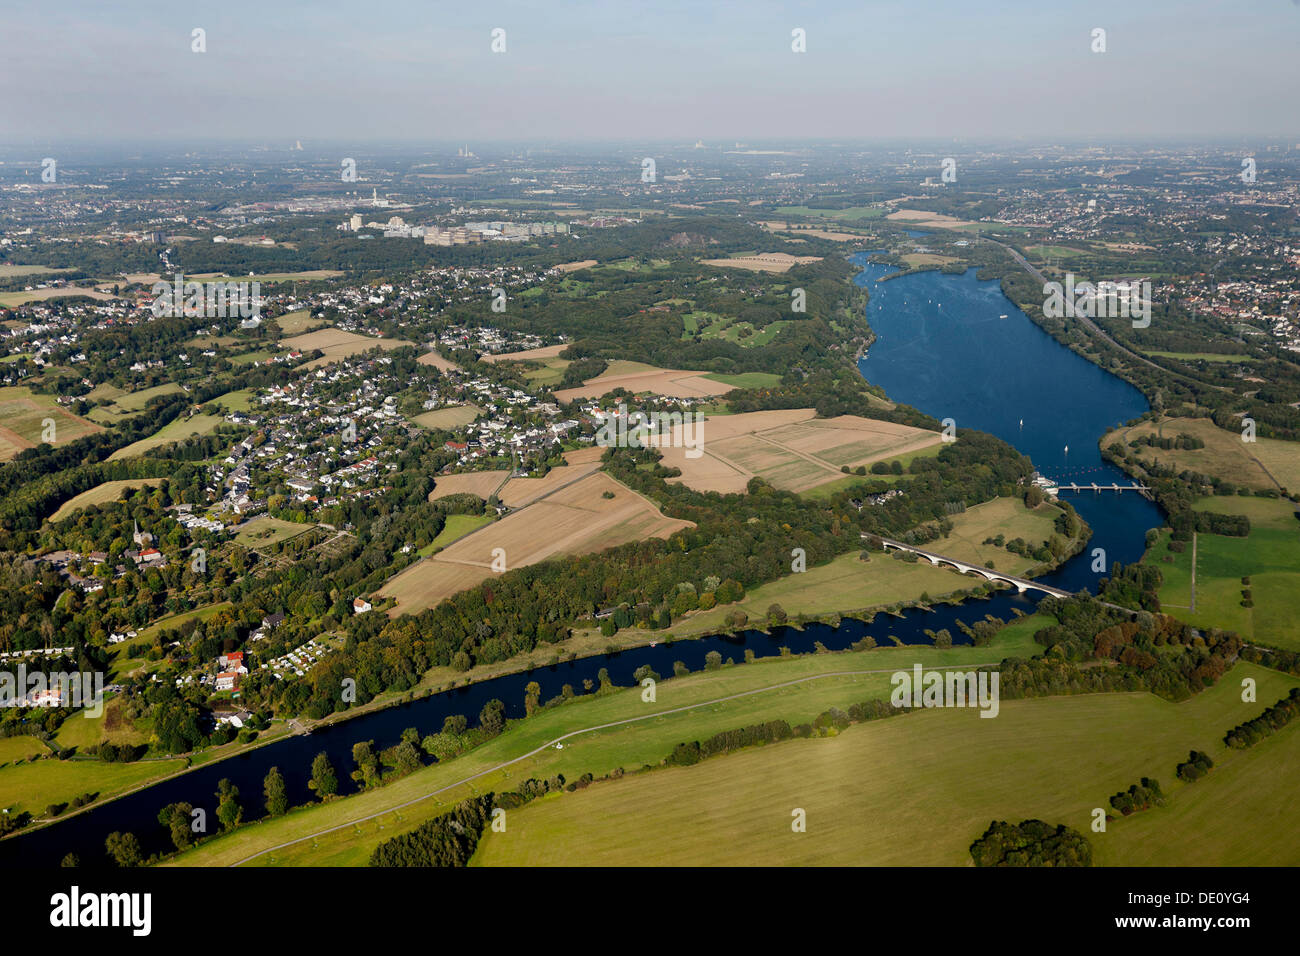 Aerial view, view of Blankenstein and the Kemnader Stausee reservoir, Bochum-Stiepel, Ruhr University Bochum, RUB, Hattingen Stock Photo